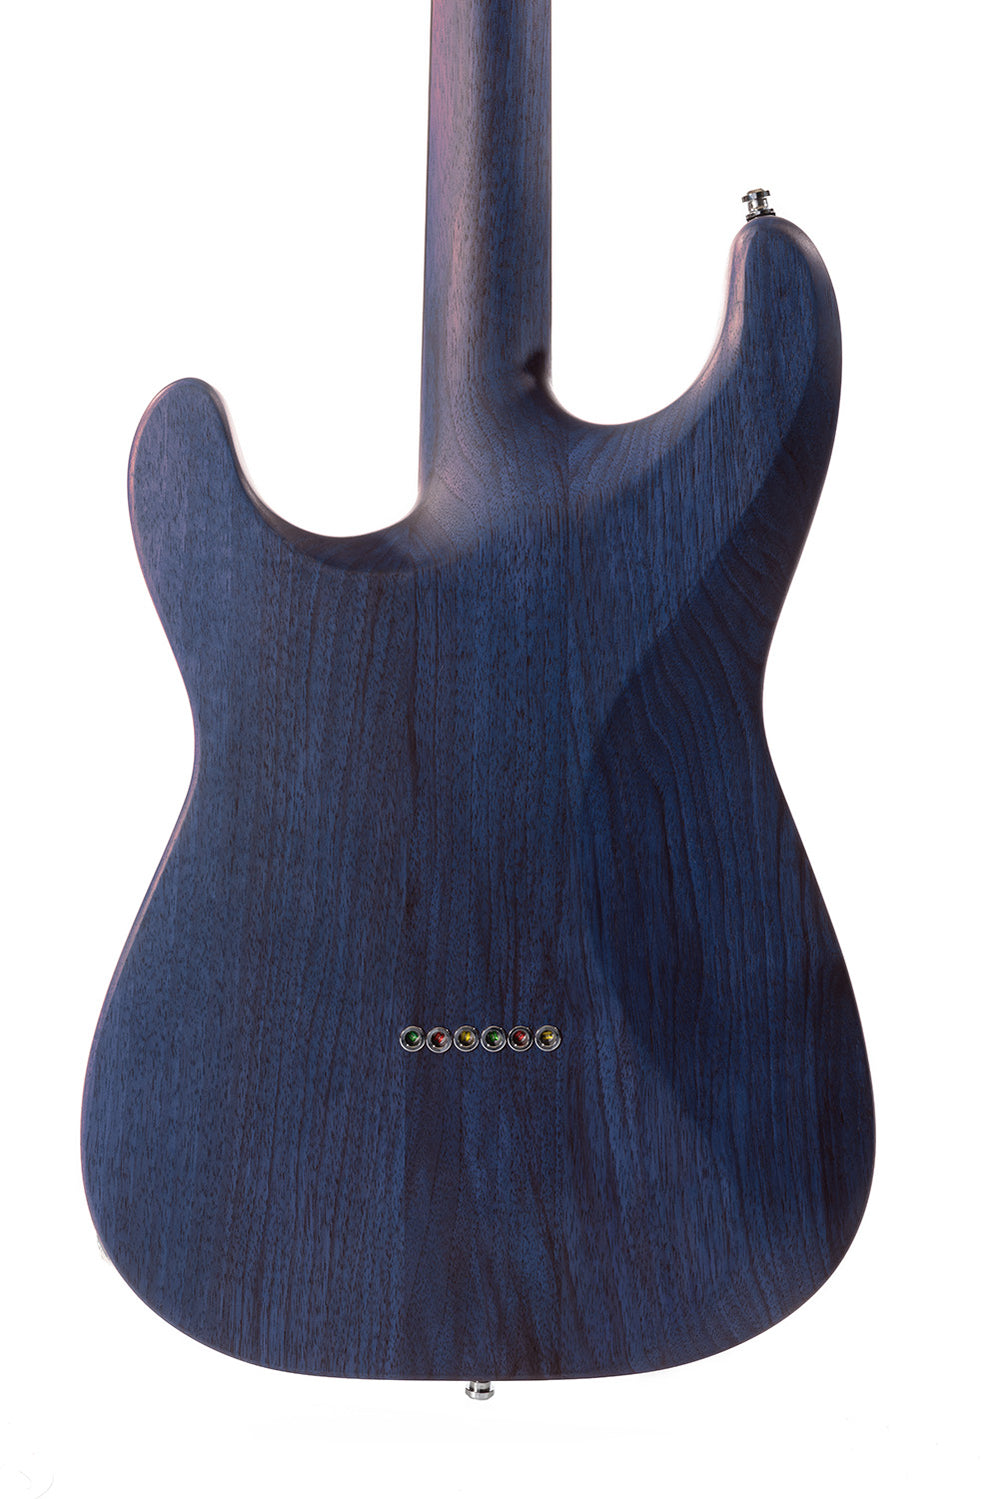 ST_Full_Walnut_Deep_Blue_Back_Close_Up_De_Leeuw_Guitars_Paris_Made_in_France_Luthier_Guitar_Maker_France_Neck_Through_Manche_Traversant